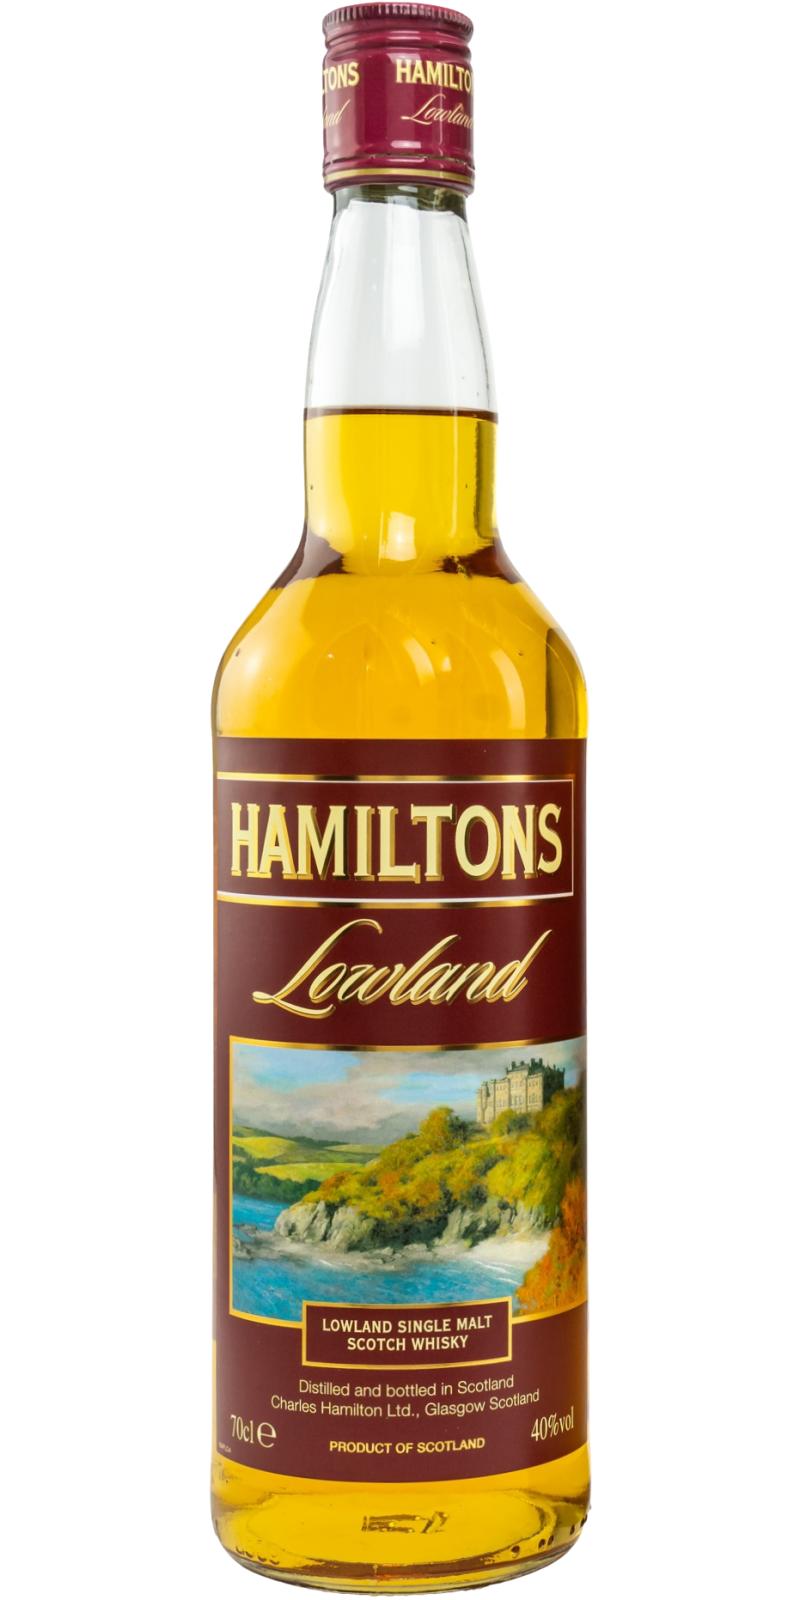 Hamiltons Lowland